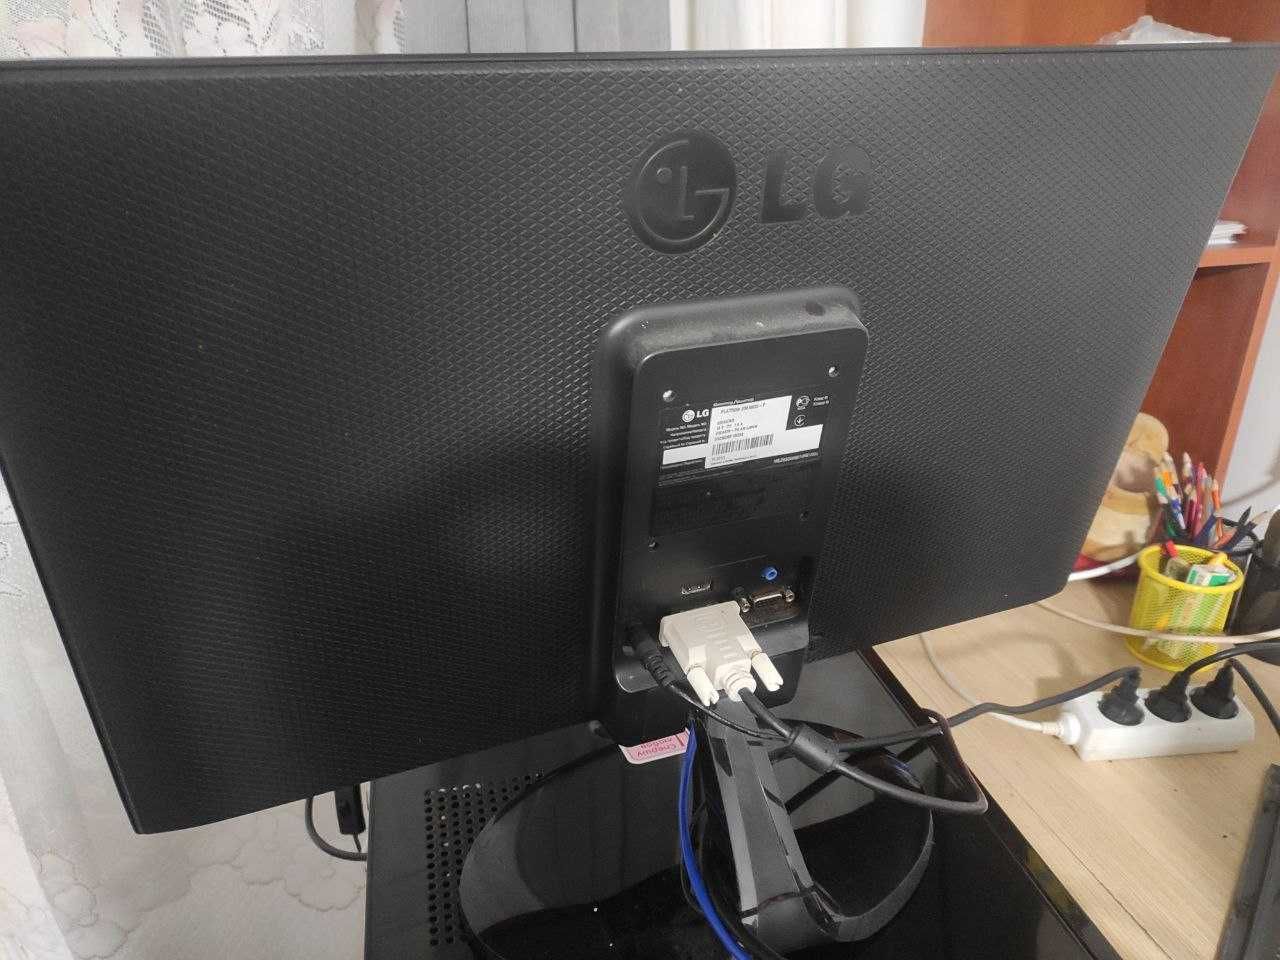 Монітор LG Flatron 23EA63V-P з дефектами, 23 дюйми, FHD, IPS, матовий